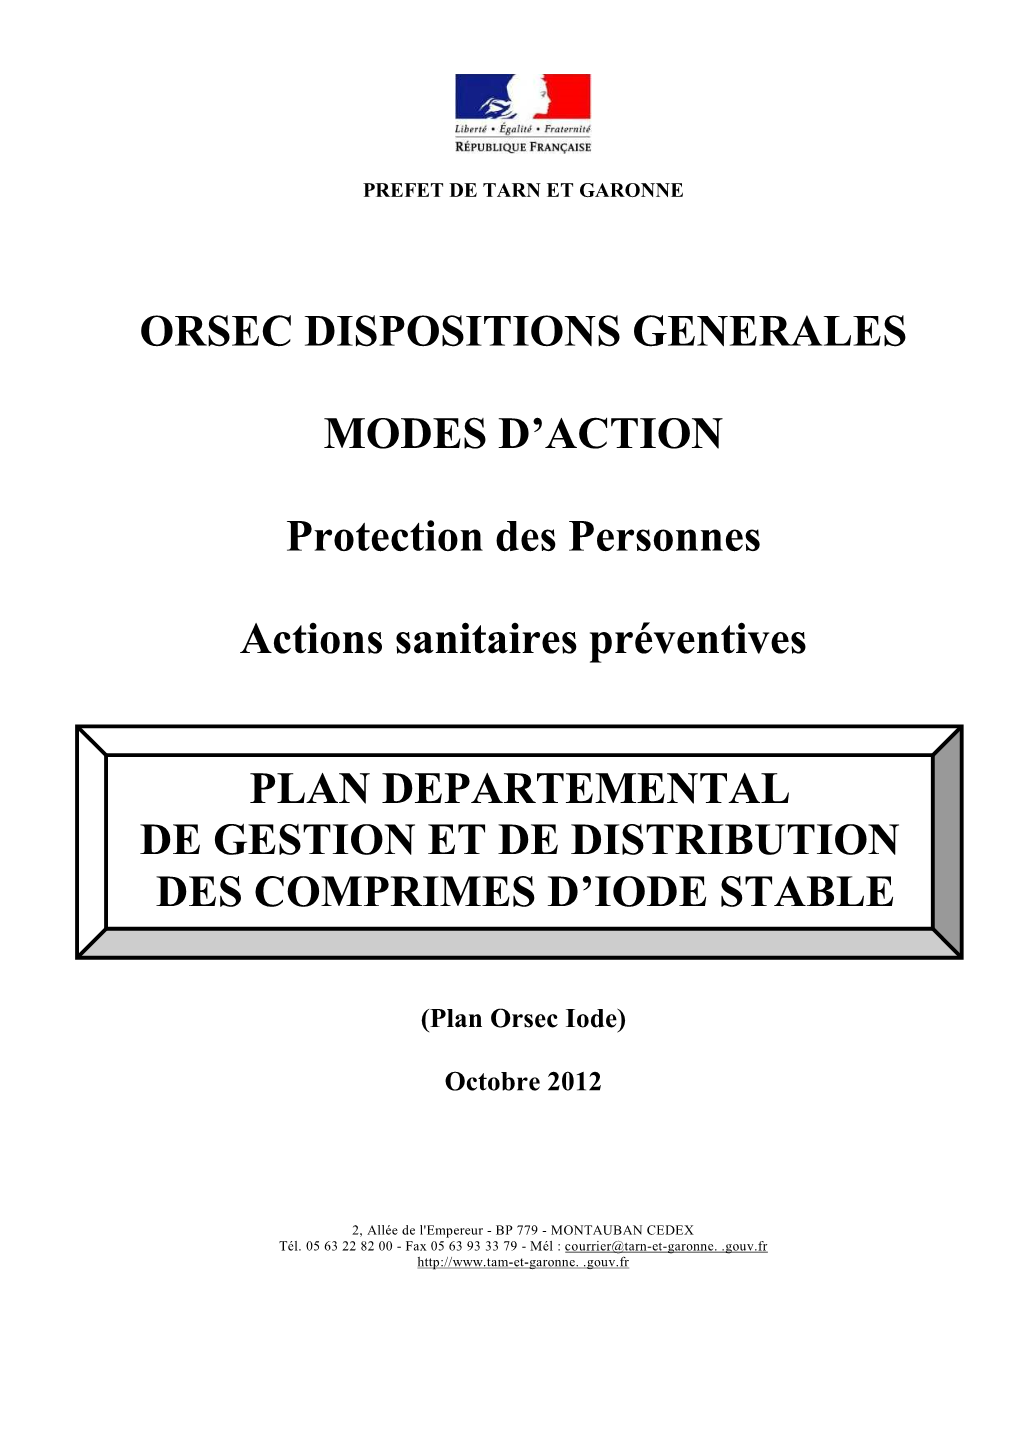 Plan Departemental De Gestion Et De Distribution Des Comprimes D'iode